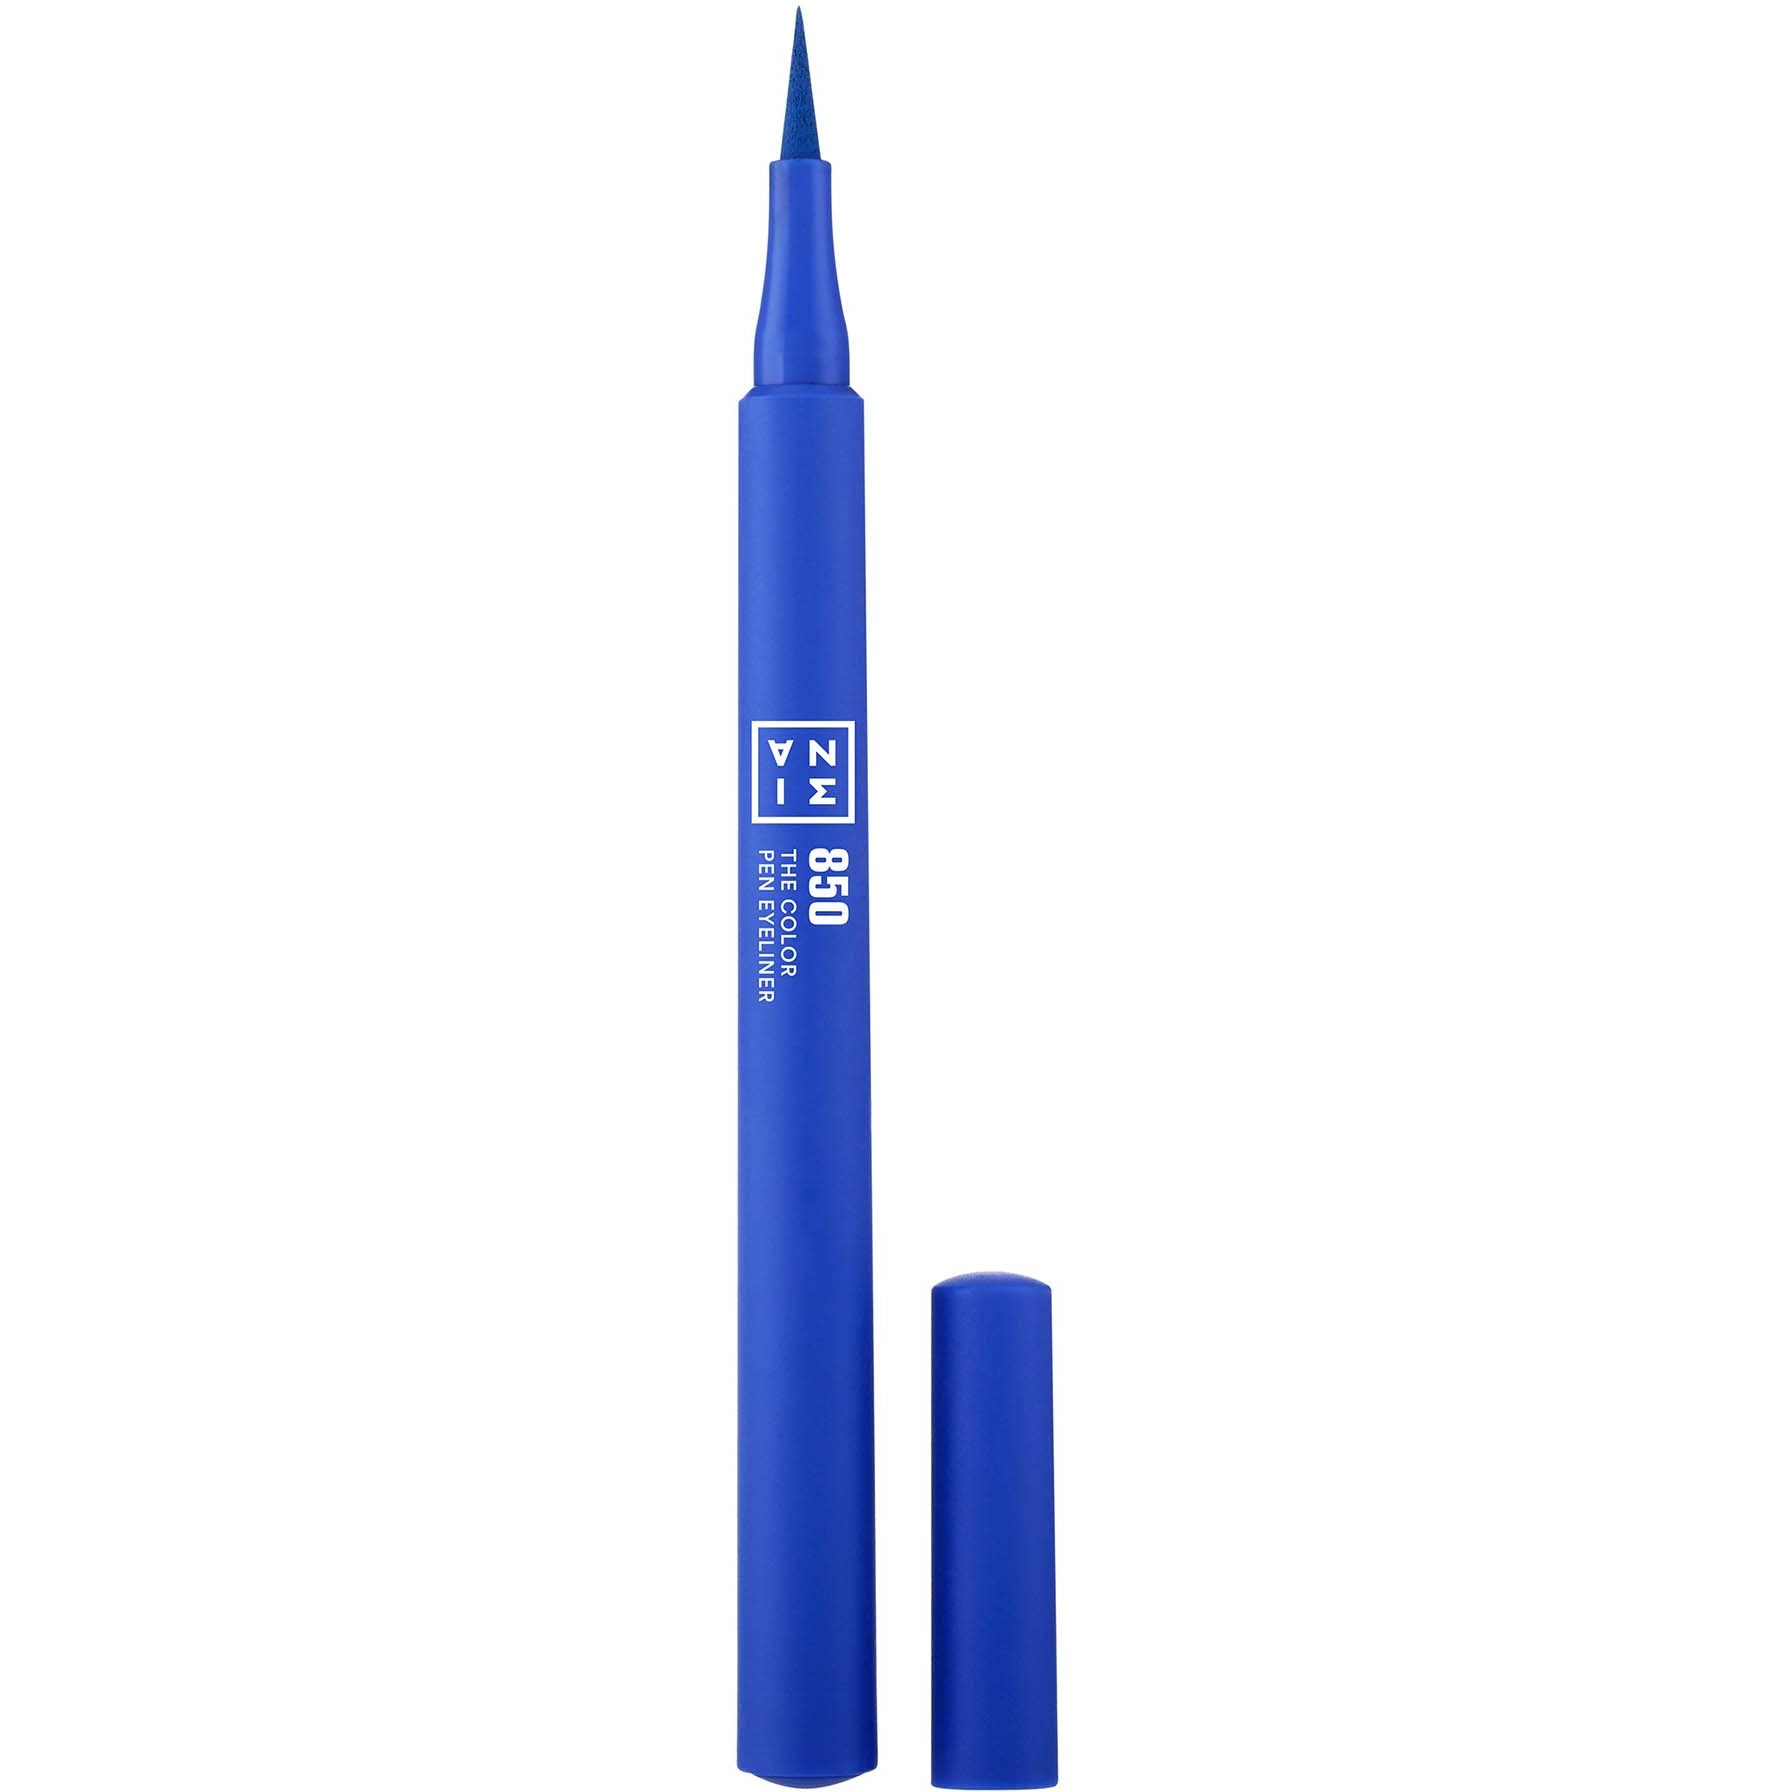 Bilde av 3ina The Color Pen Eyeliner 850